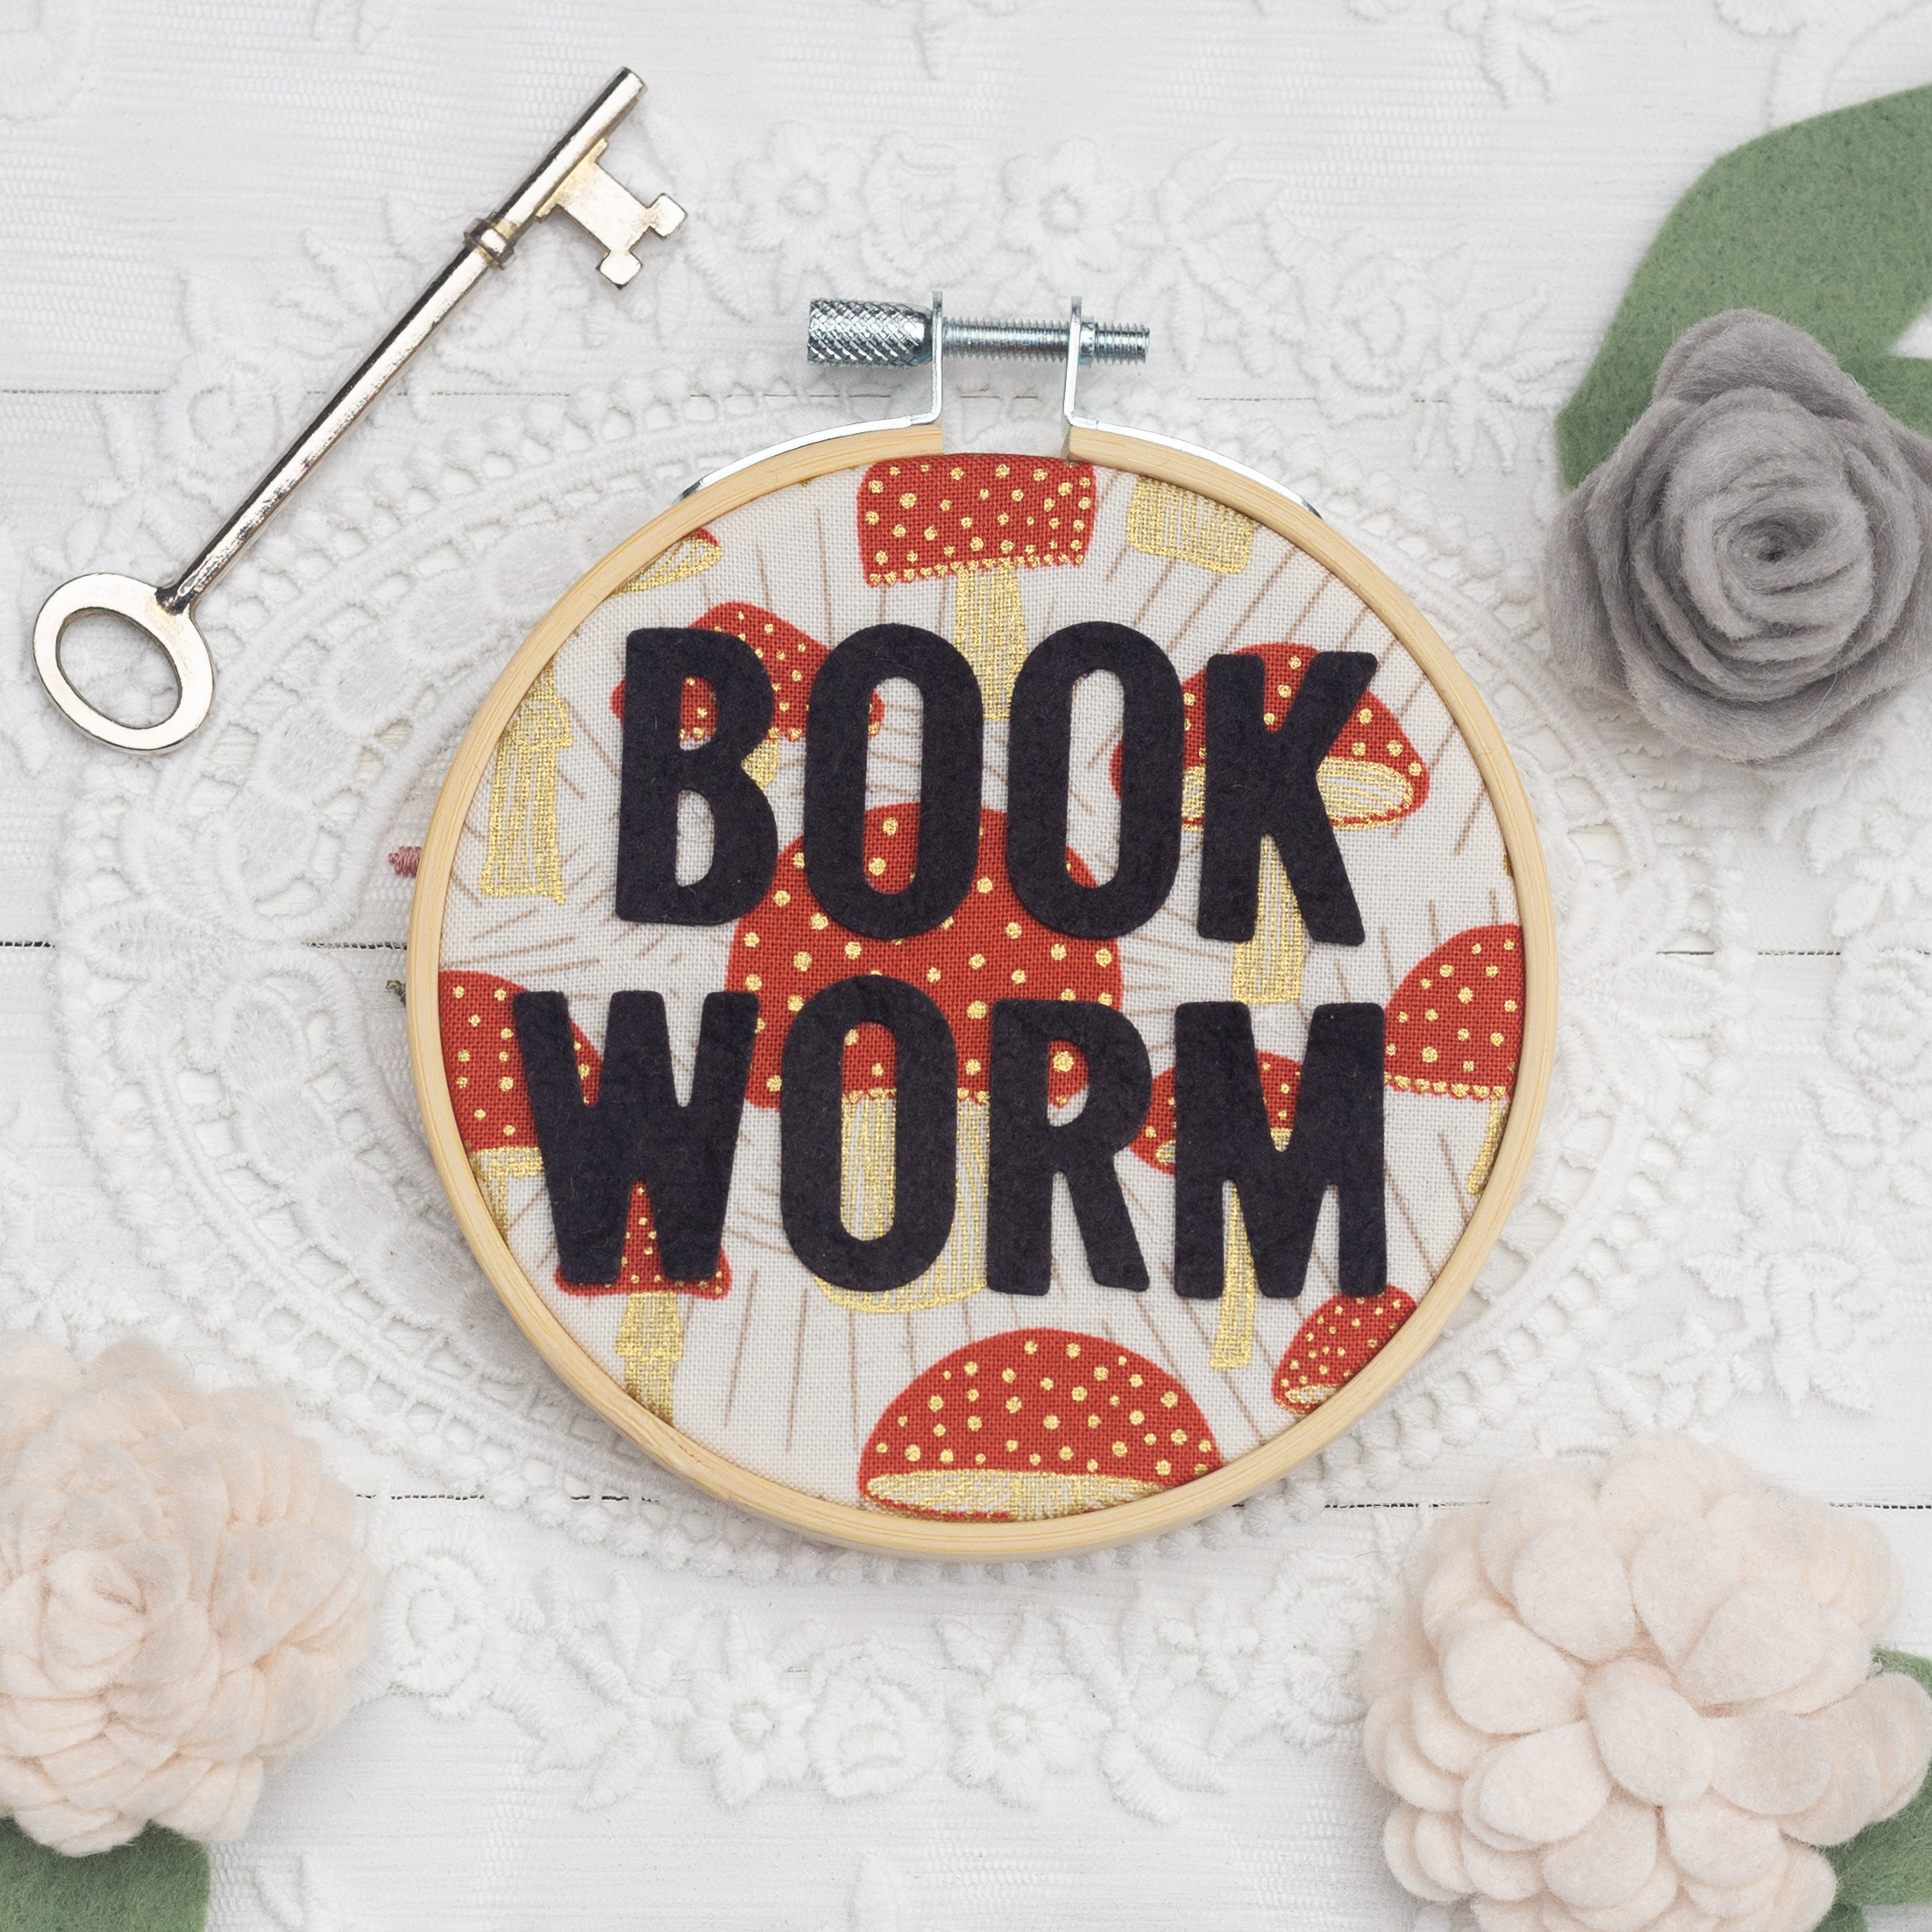 Weekend Makes: Hoop Embroidery [Book]